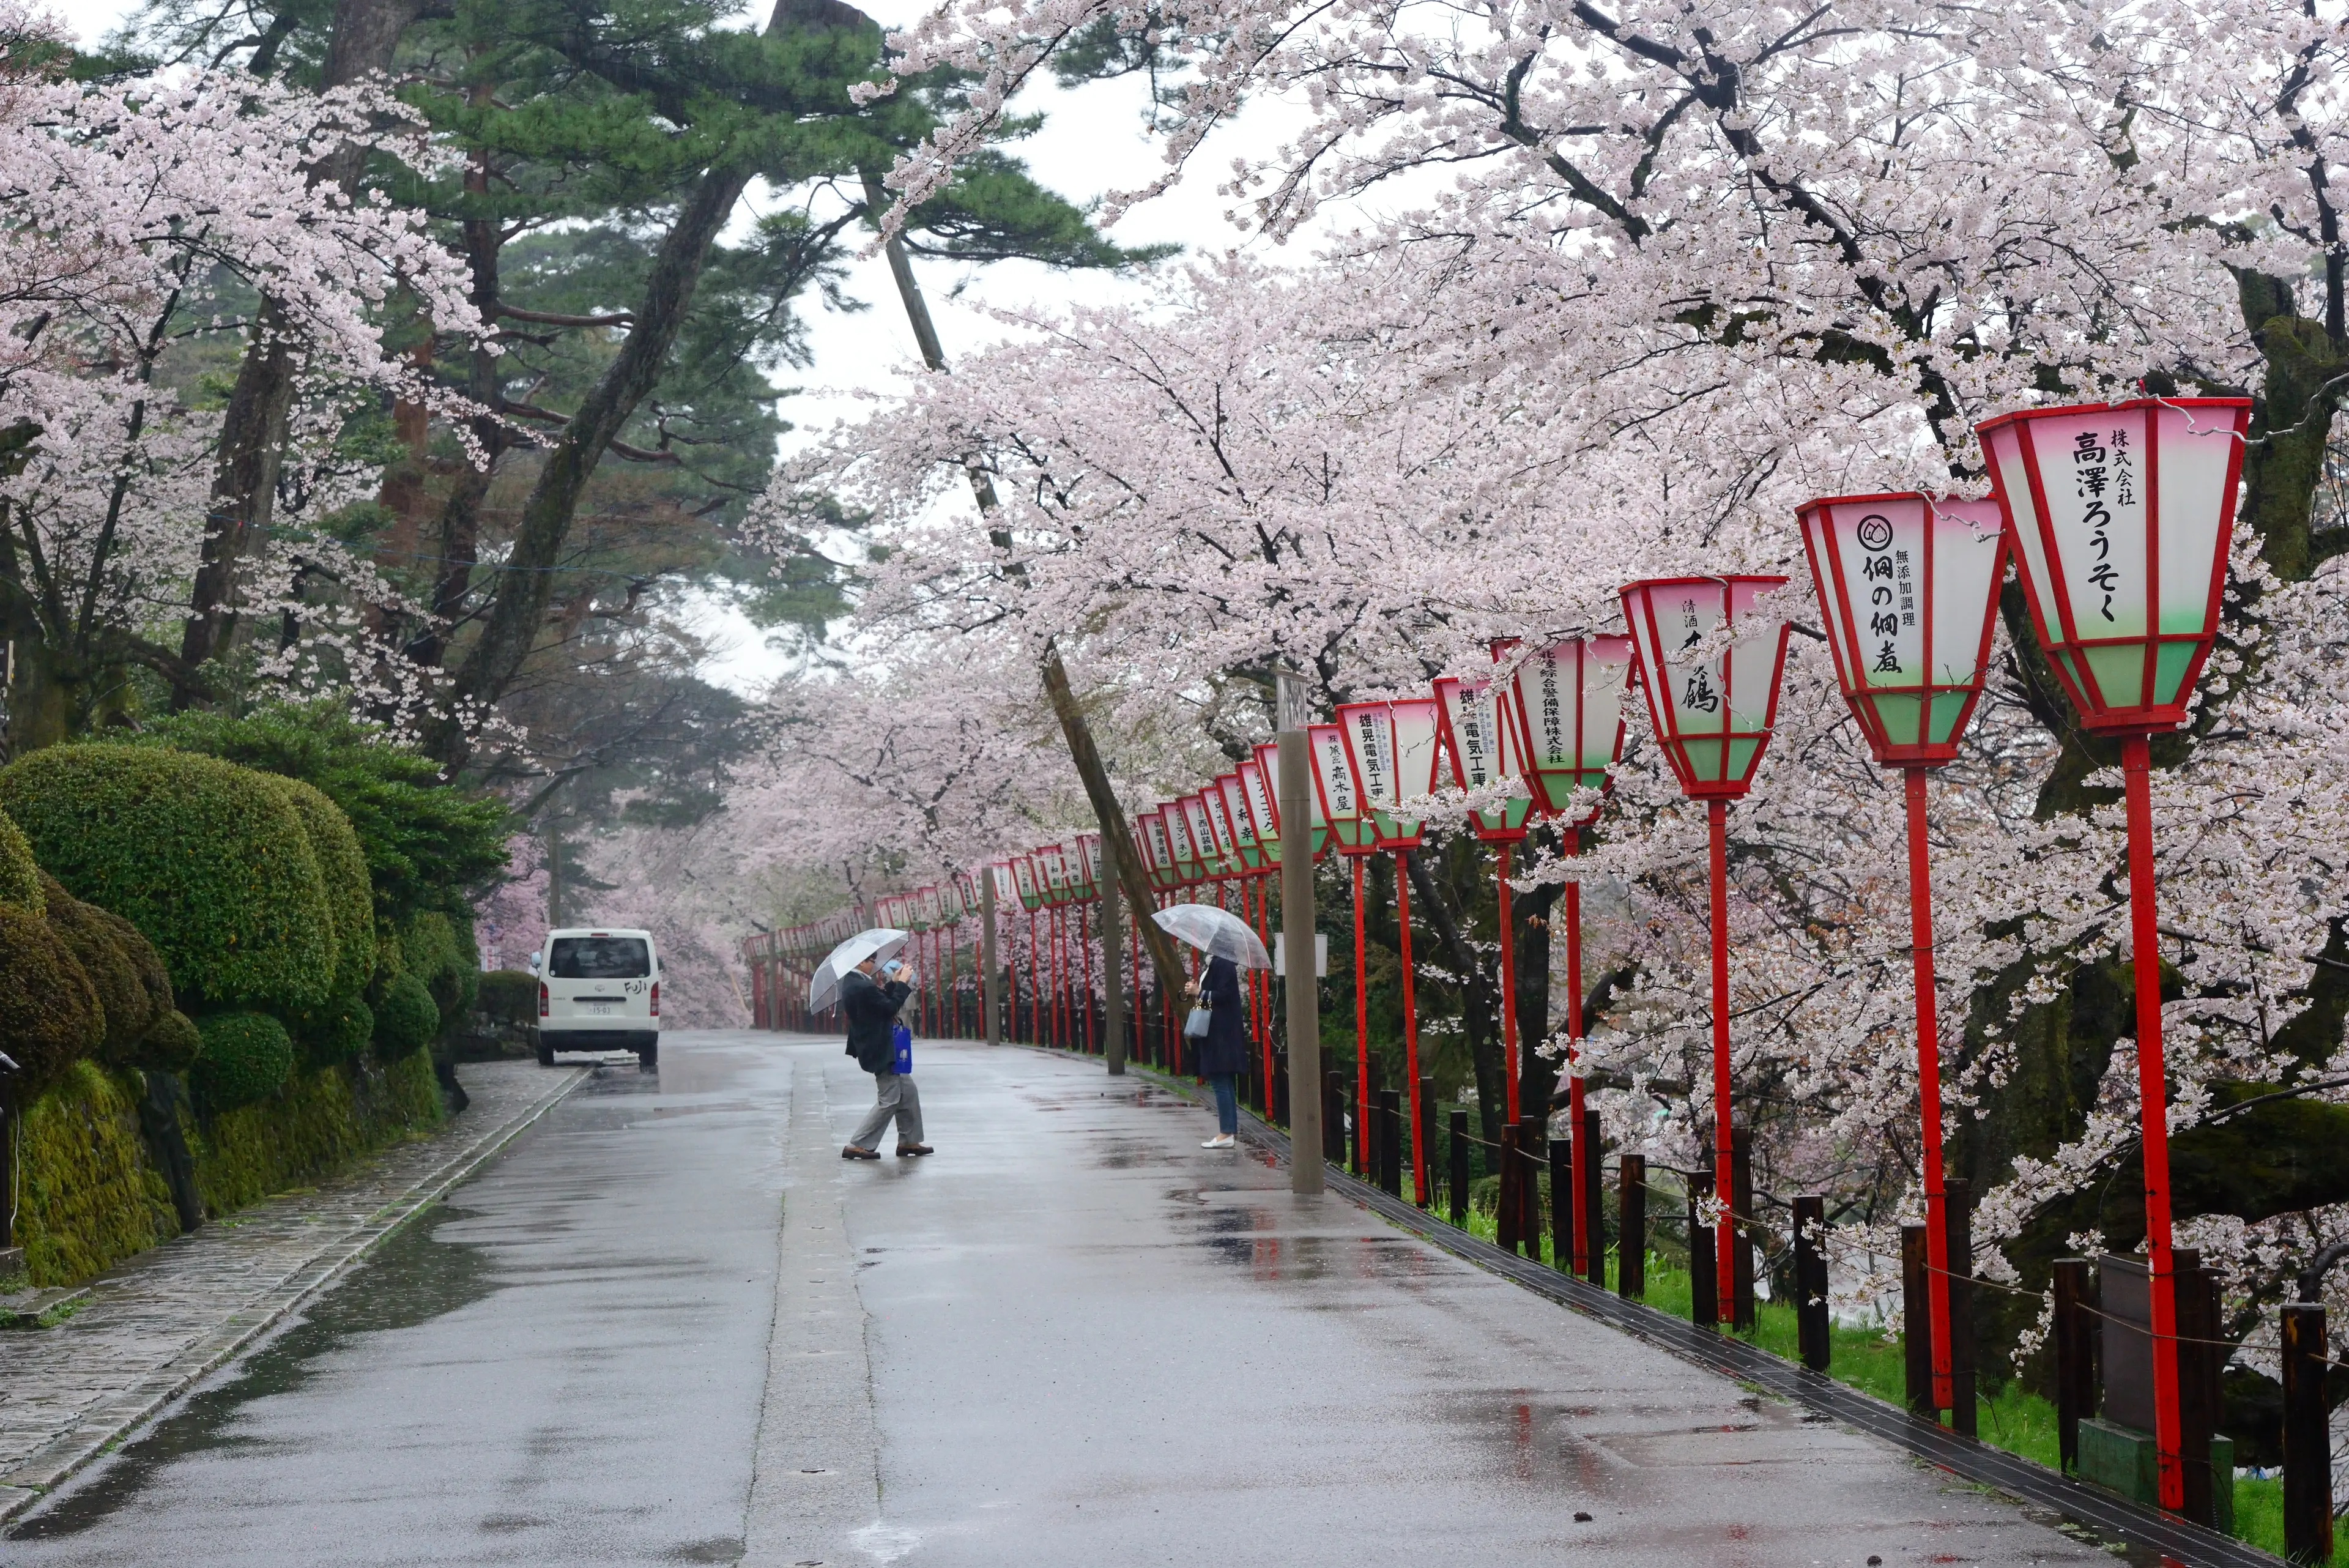 Cherry blossom trees in Kenrokuen garden